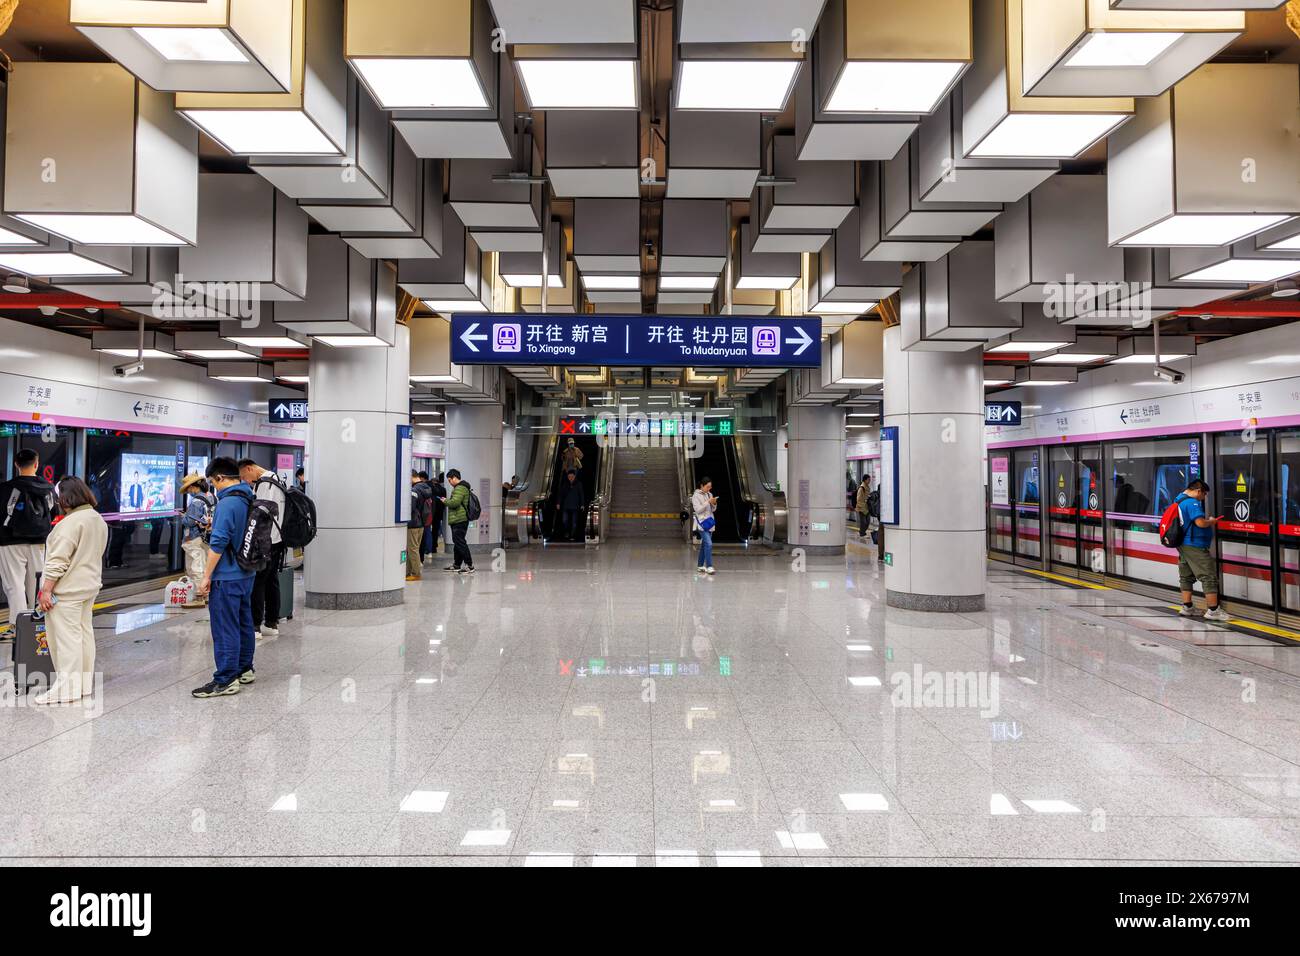 Pechino, Cina - 12 aprile 2024: Pechino Metro Transit architettura moderna nella stazione della metropolitana dei trasporti pubblici Ping'anli a Pechino, Cina. Foto Stock